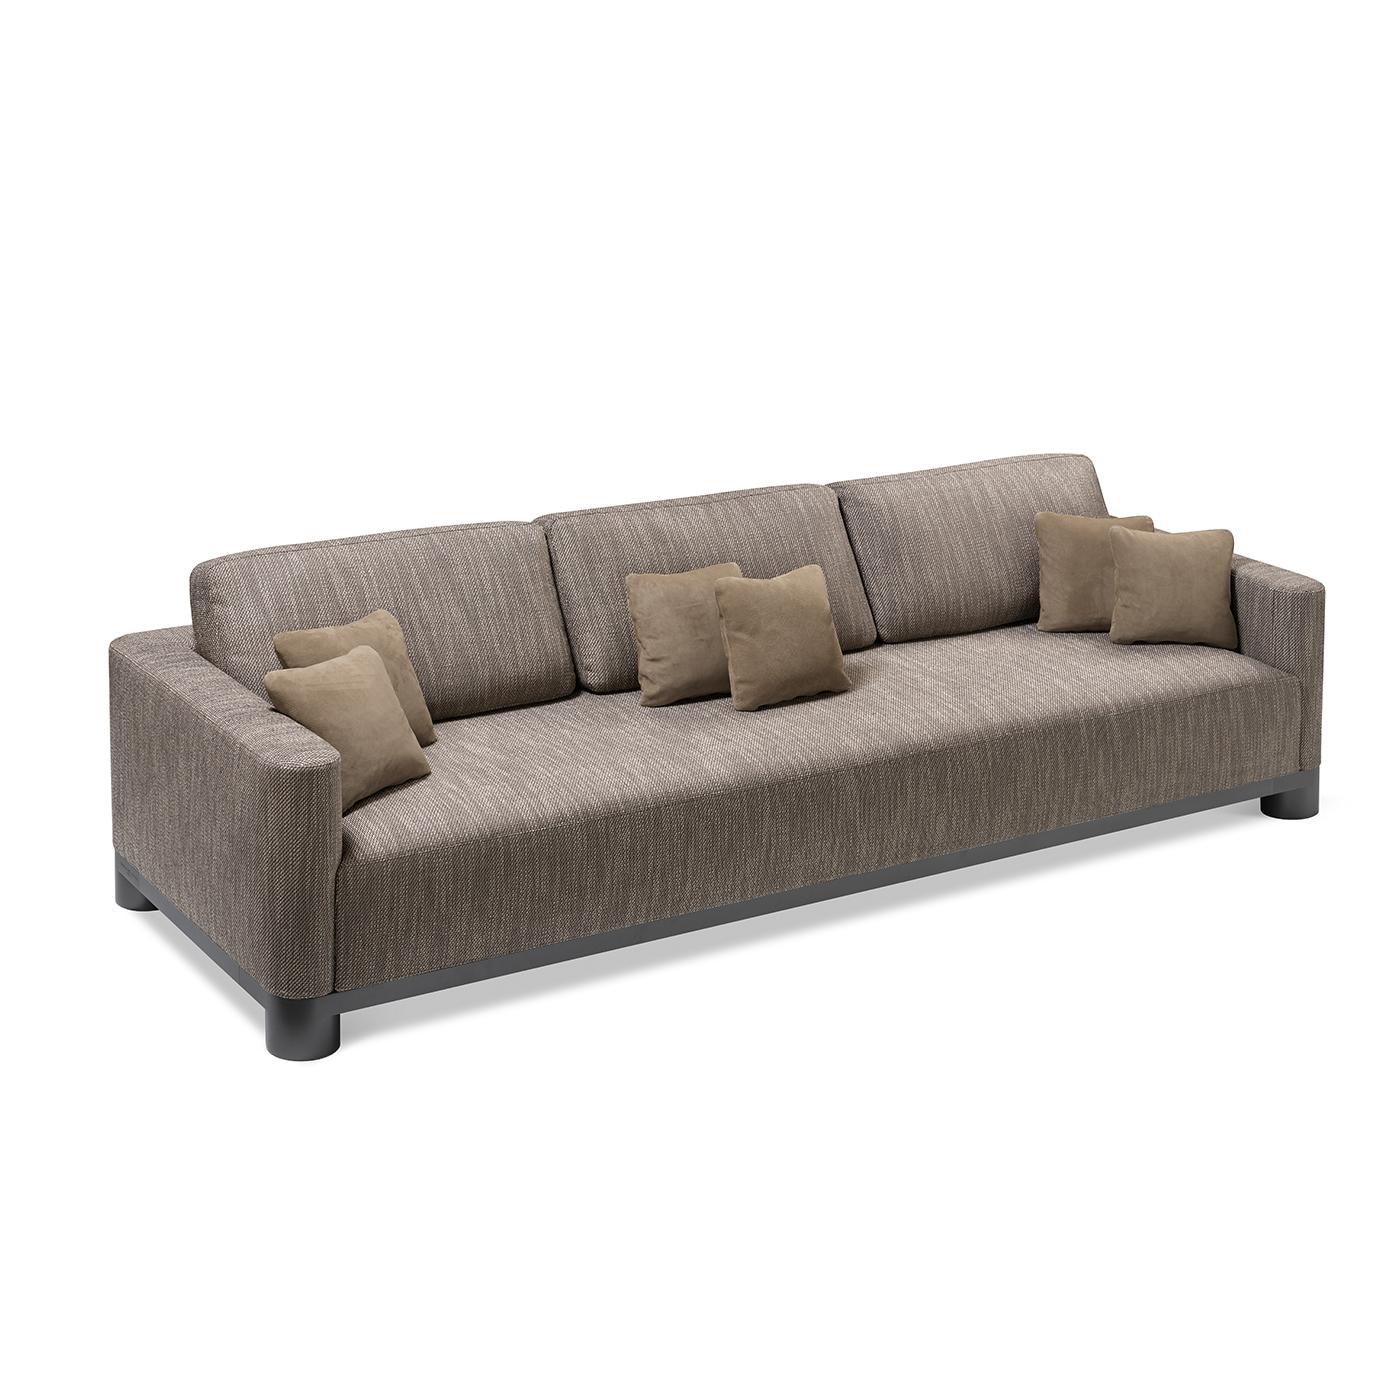 Dieses schlichte, elegante Dreisitzer-Sofa ist ein raffinierter Blickfang in einem modernen oder zeitgenössischen Interieur. Er zeichnet sich durch klare und minimalistische Linien aus, ruht auf kurzen, zylinderförmigen Füßen aus schwarzem,